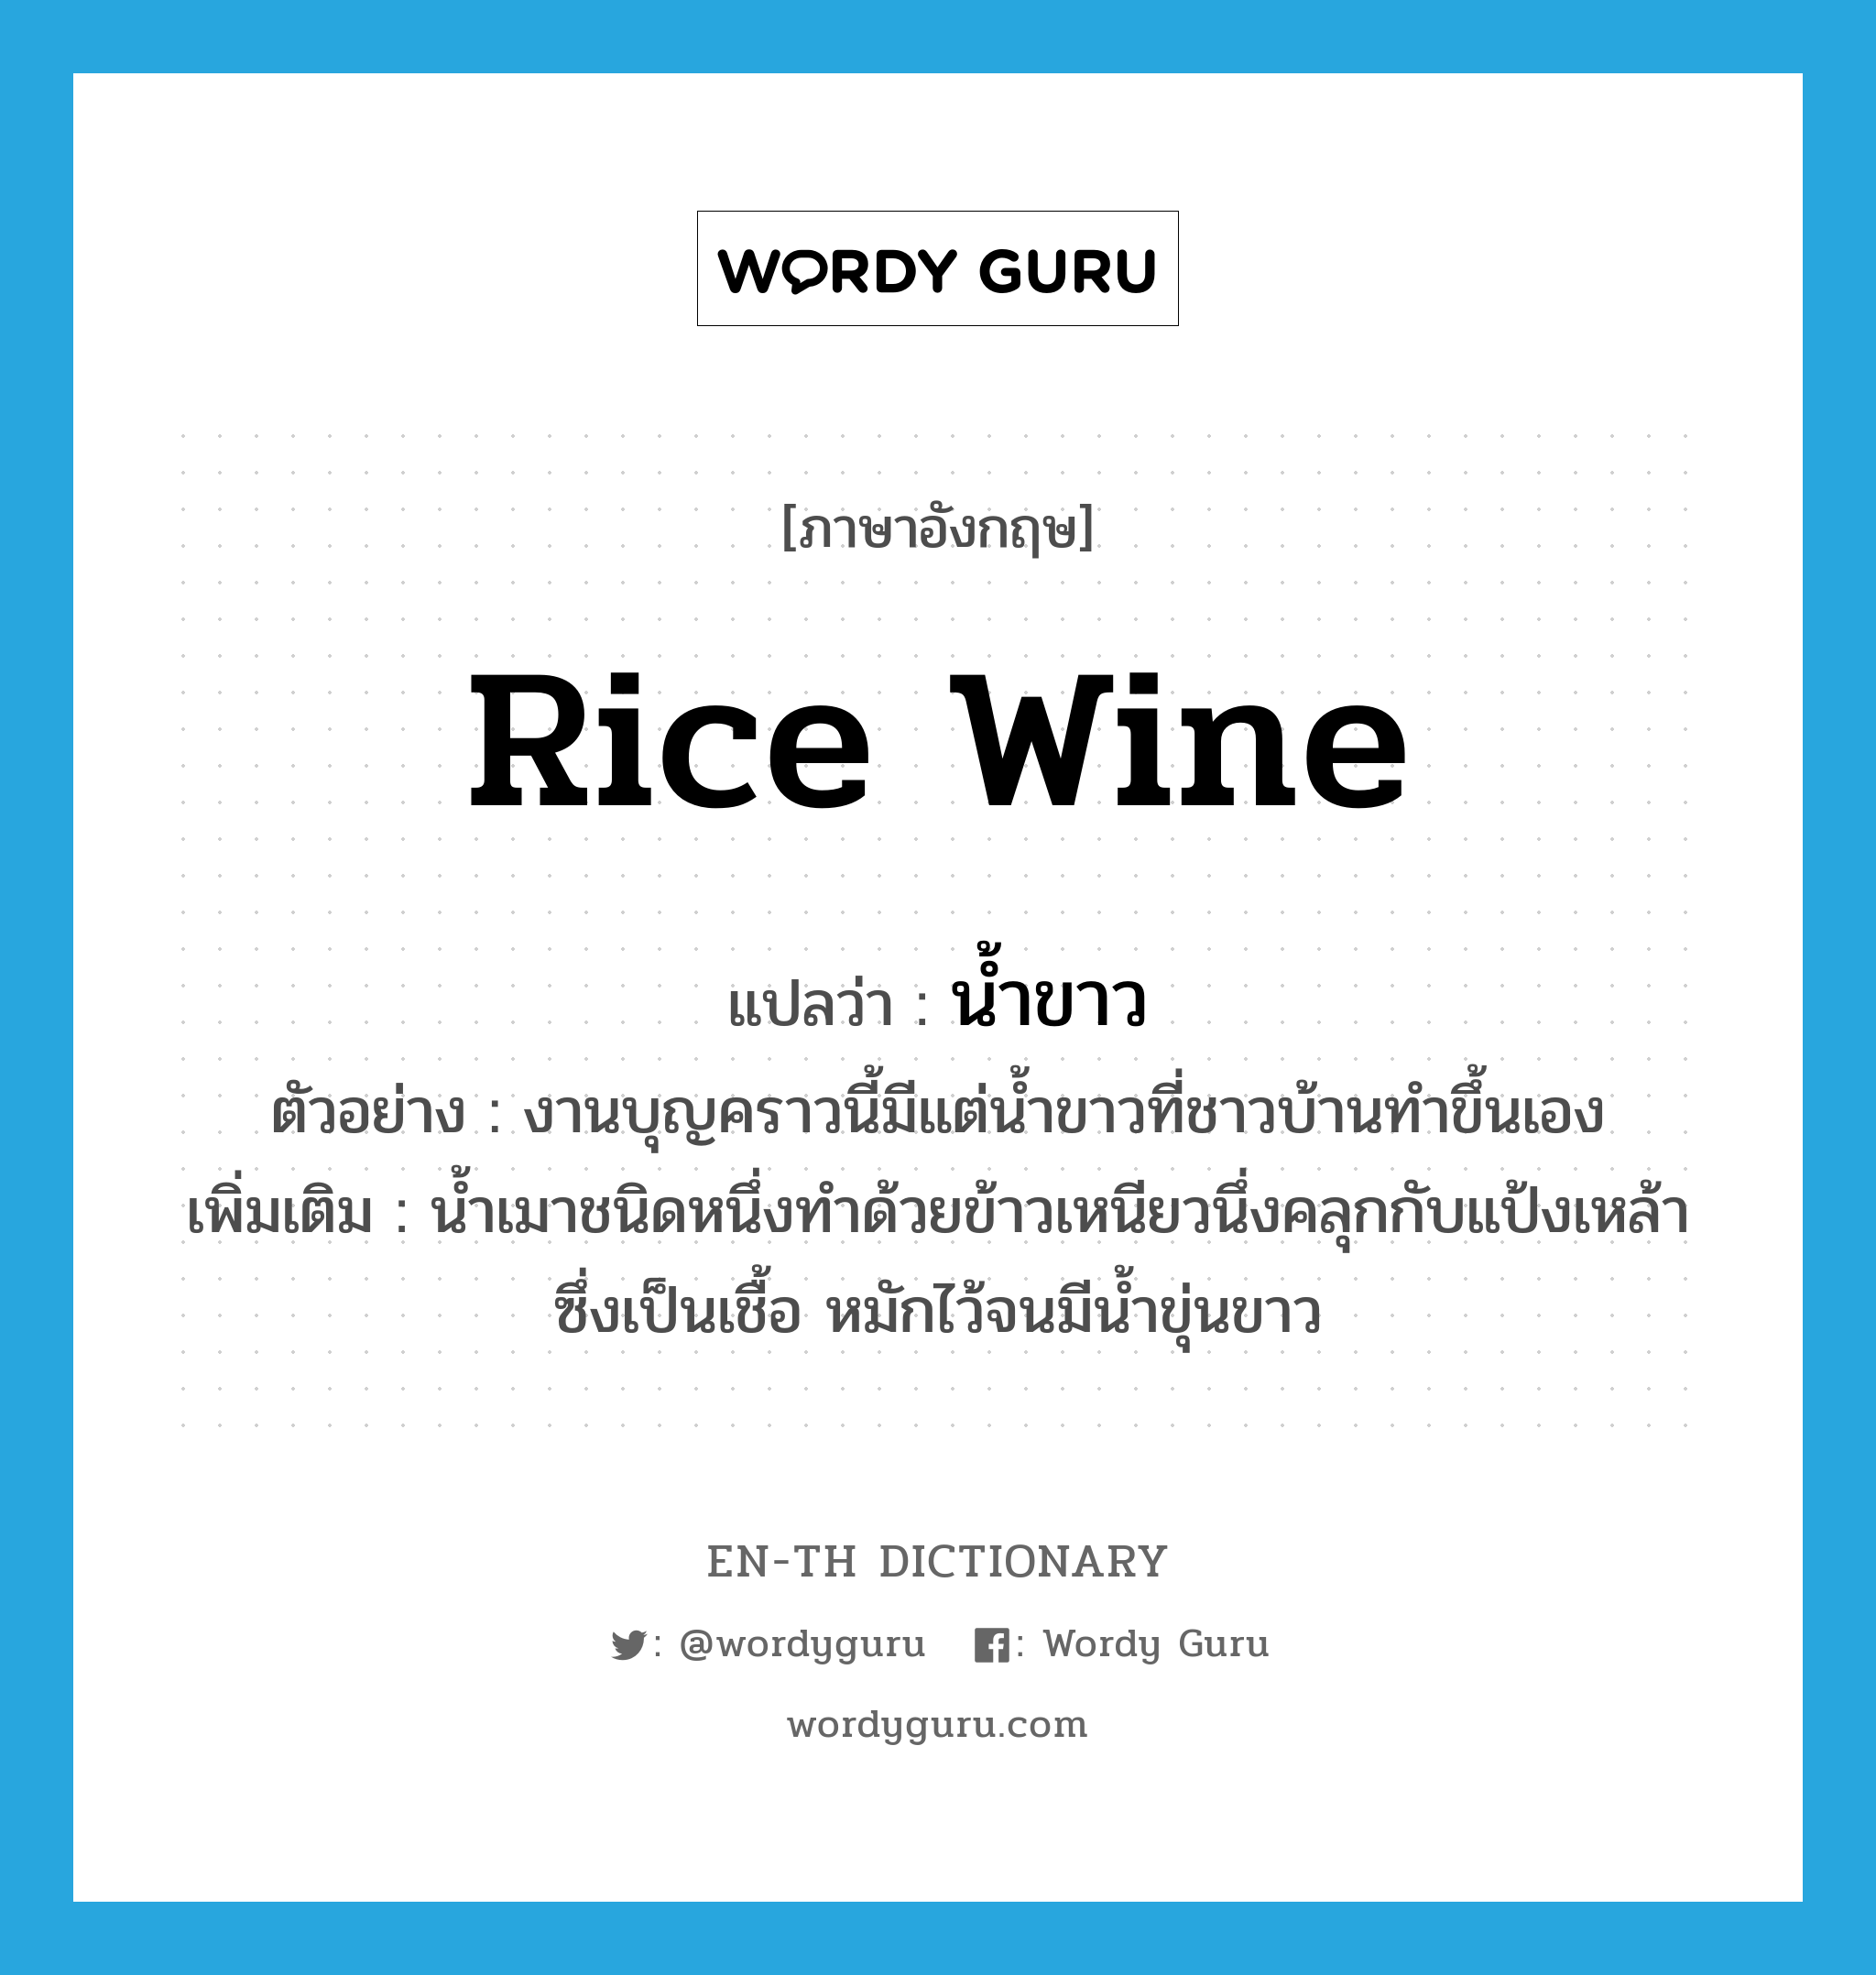 น้ำขาว ภาษาอังกฤษ?, คำศัพท์ภาษาอังกฤษ น้ำขาว แปลว่า rice wine ประเภท N ตัวอย่าง งานบุญคราวนี้มีแต่น้ำขาวที่ชาวบ้านทำขึ้นเอง เพิ่มเติม น้ำเมาชนิดหนึ่งทำด้วยข้าวเหนียวนึ่งคลุกกับแป้งเหล้าซึ่งเป็นเชื้อ หมักไว้จนมีน้ำขุ่นขาว หมวด N